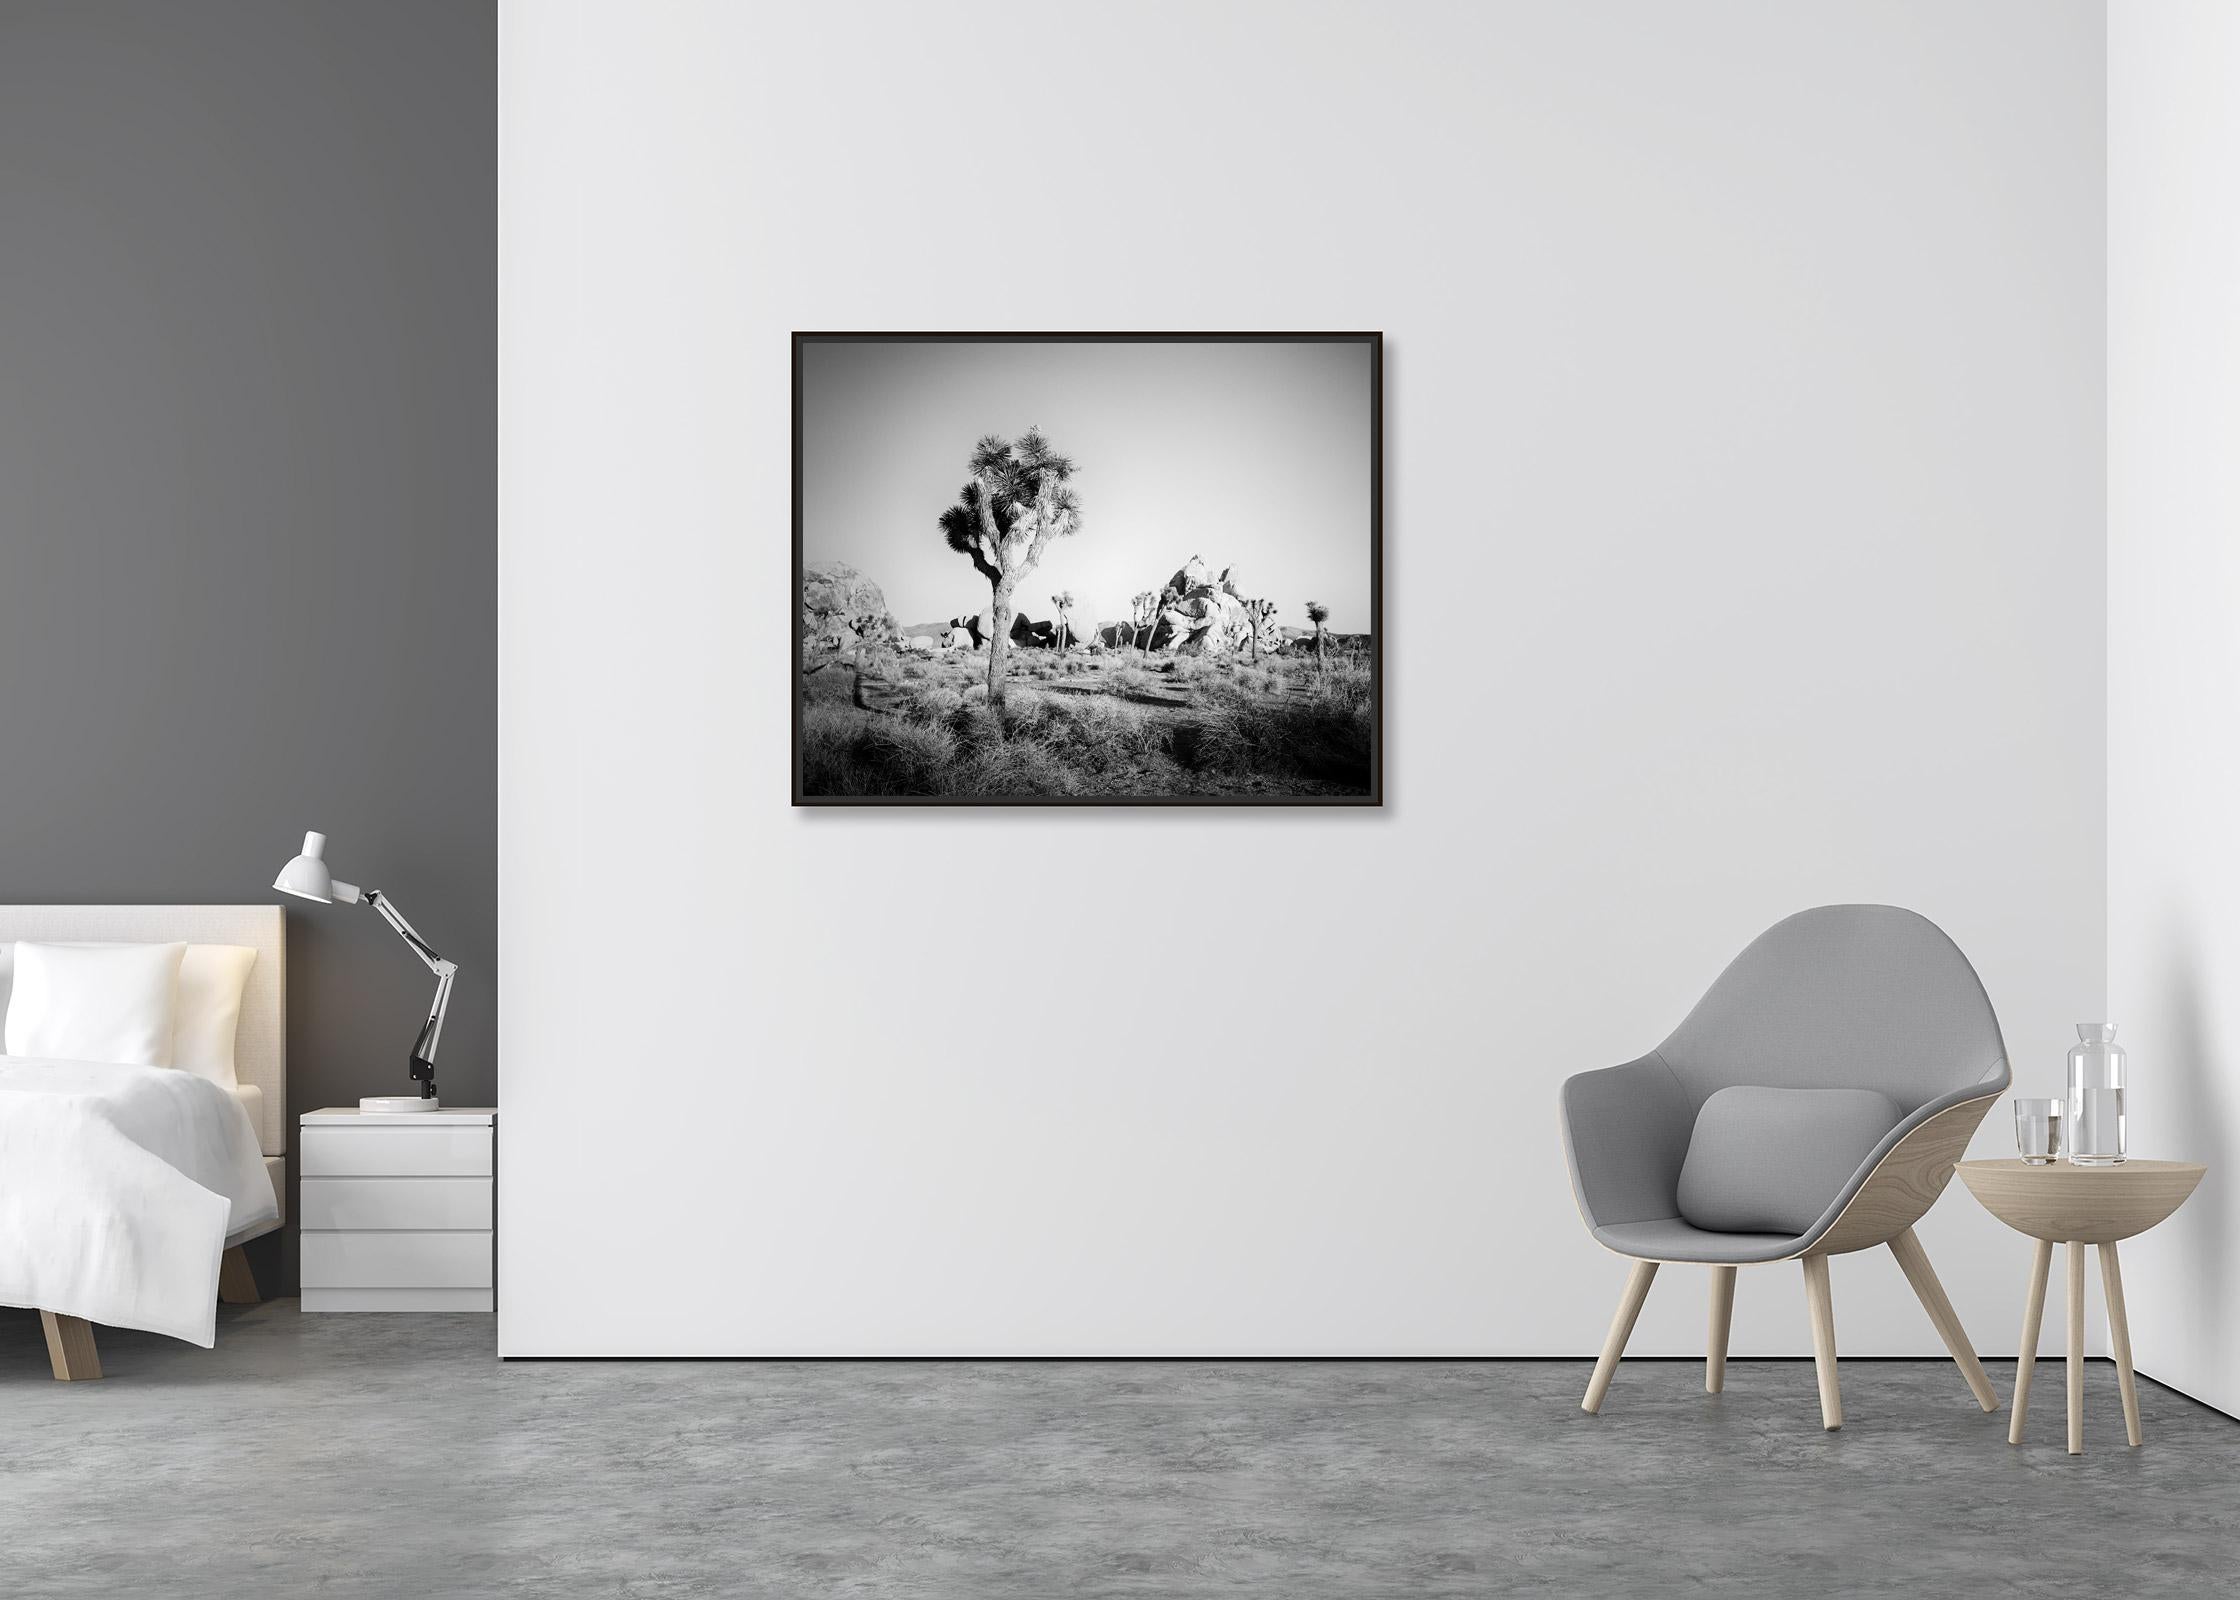 Joshua Tree, Felsen, Wüste, Kalifornien, USA, Schwarz-Weiß-Landschaftsfotografie (Zeitgenössisch), Photograph, von Gerald Berghammer